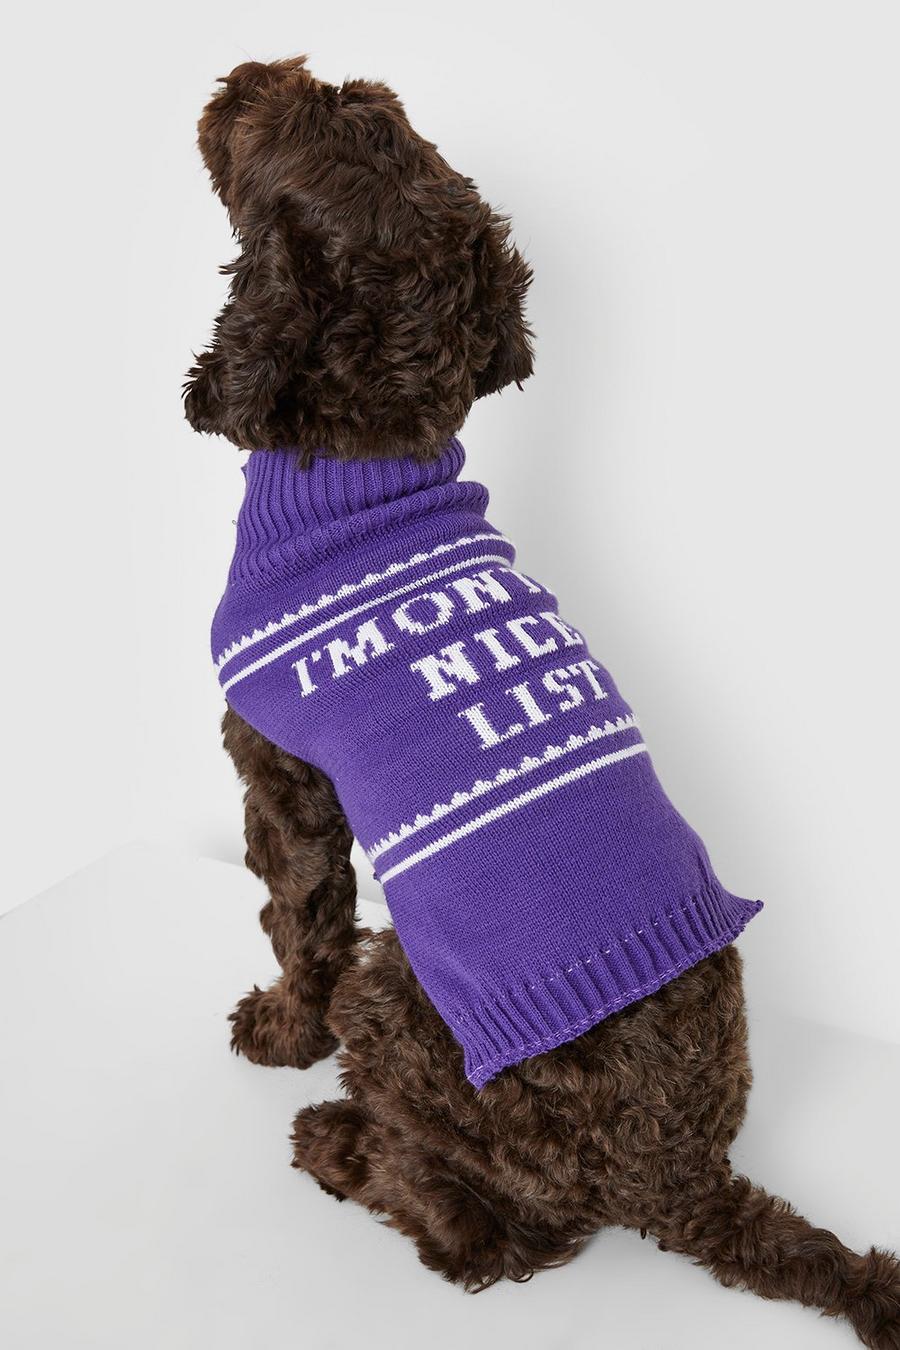 Maglione natalizio per cani con slogan Nice List, Purple morado